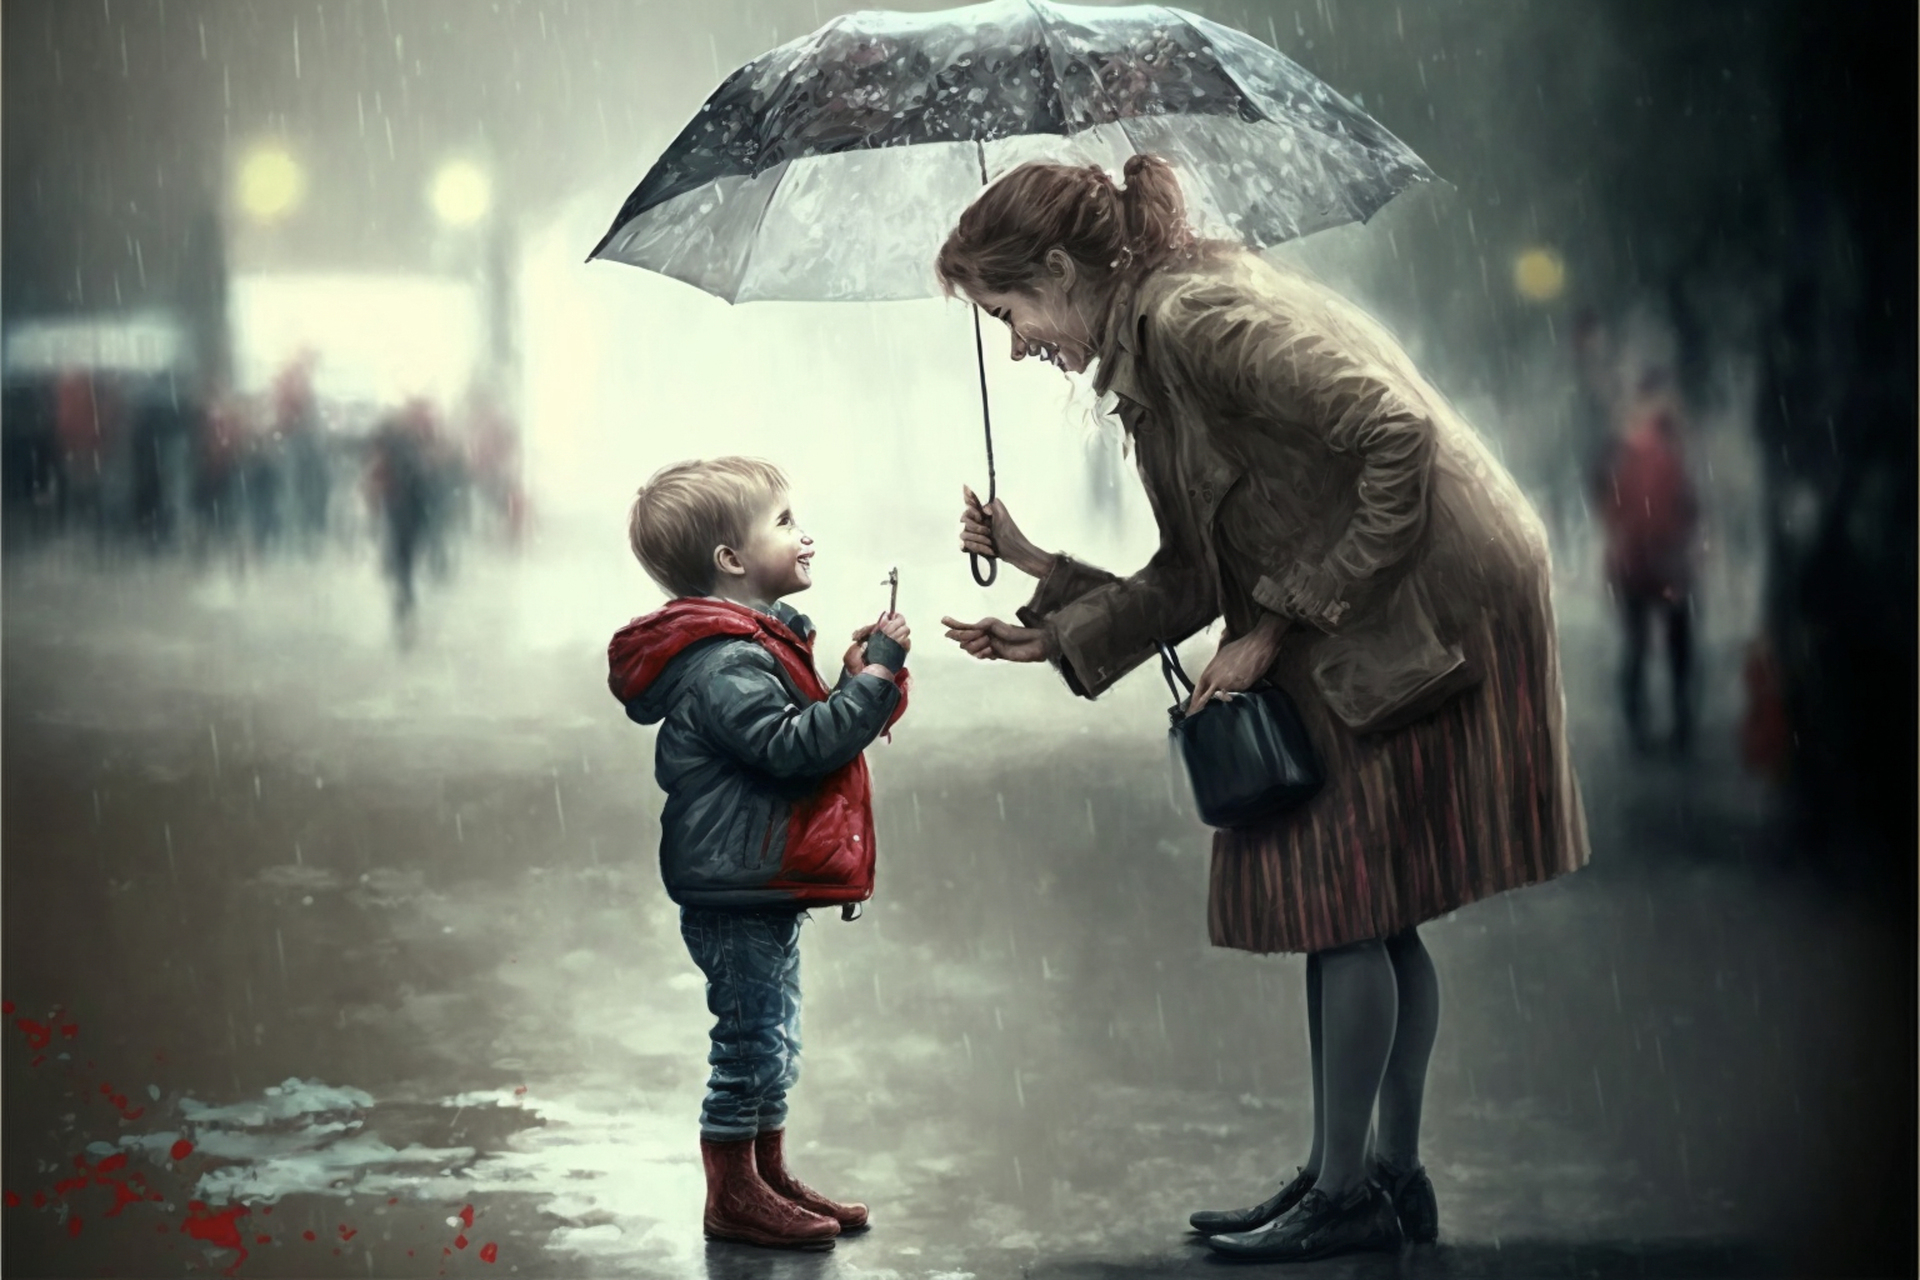 Na tym poruszającym obrazku widzimy uroczą scenę na ulicy, gdzie dobroczynna kobieta podaje parasol chłopcu. Ta gestyczna pomoc i troska odzwierciedlają empatię i współczucie, które możemy znaleźć w naszym społeczeństwie. Kobieta stoi przy chodniku, trzymając parasol, gotowa do podzielenia się nim z inną osobą. Jej ciepłe spojrzenie i wyraz twarzy pokazują chęć niesienia pomocy i ochrony. Chłopiec, który stoi obok niej, jest ubrany w zwykłe ubrania i nie posiada własnego parasola, ale patrząc na niego, widać, że potrzebuje ochrony przed deszczem lub słońcem